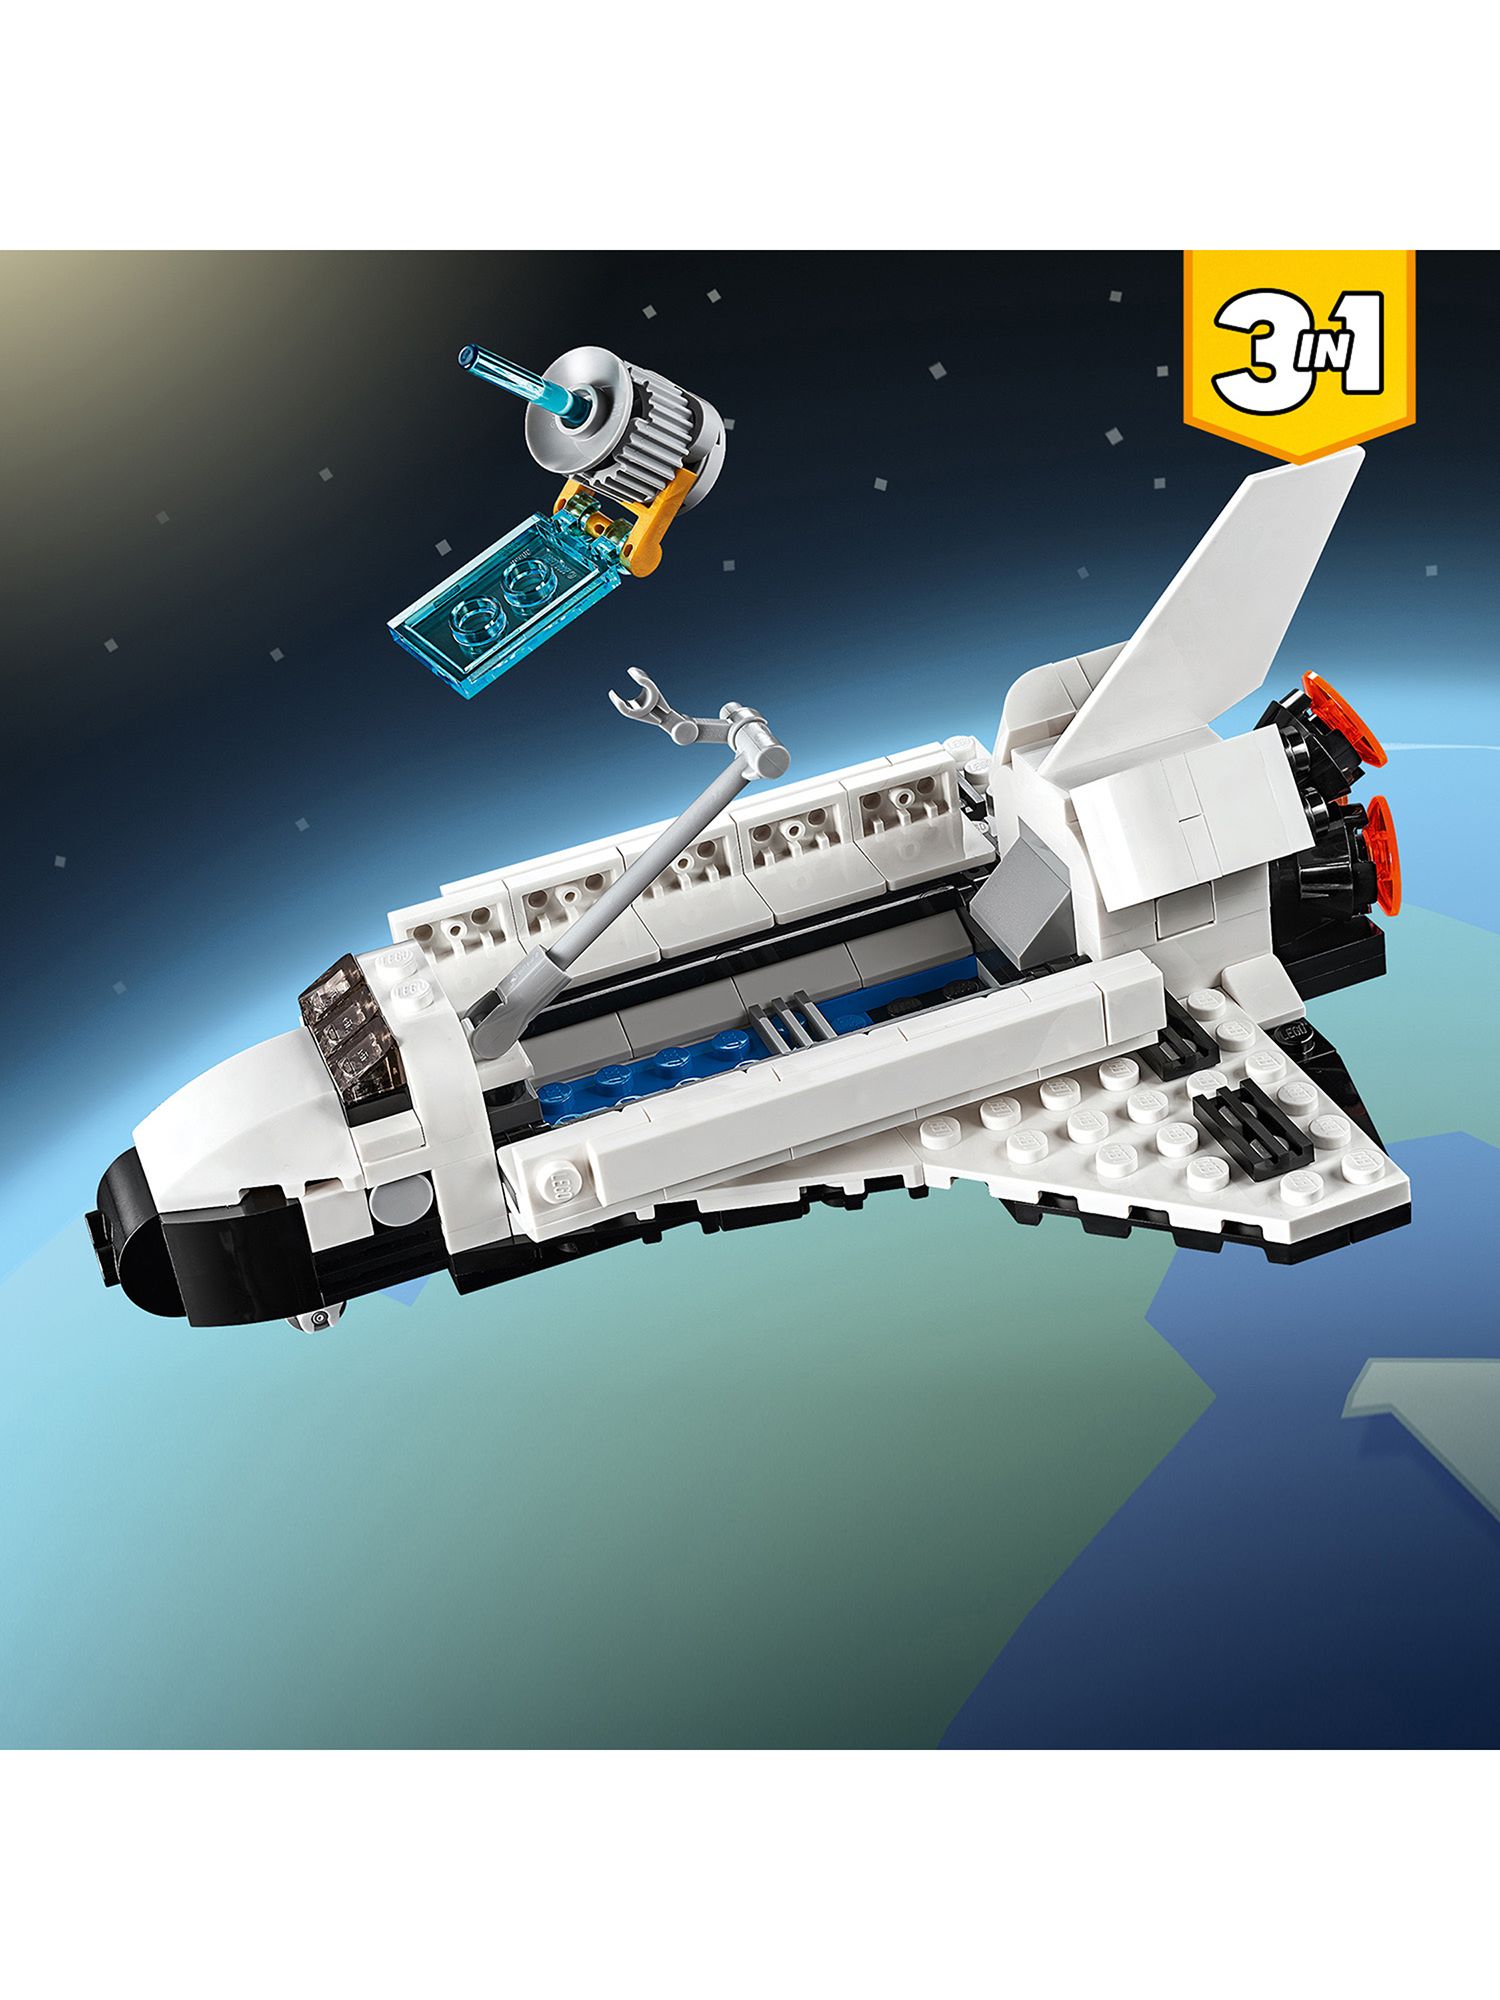 lego space shuttle 3 in 1